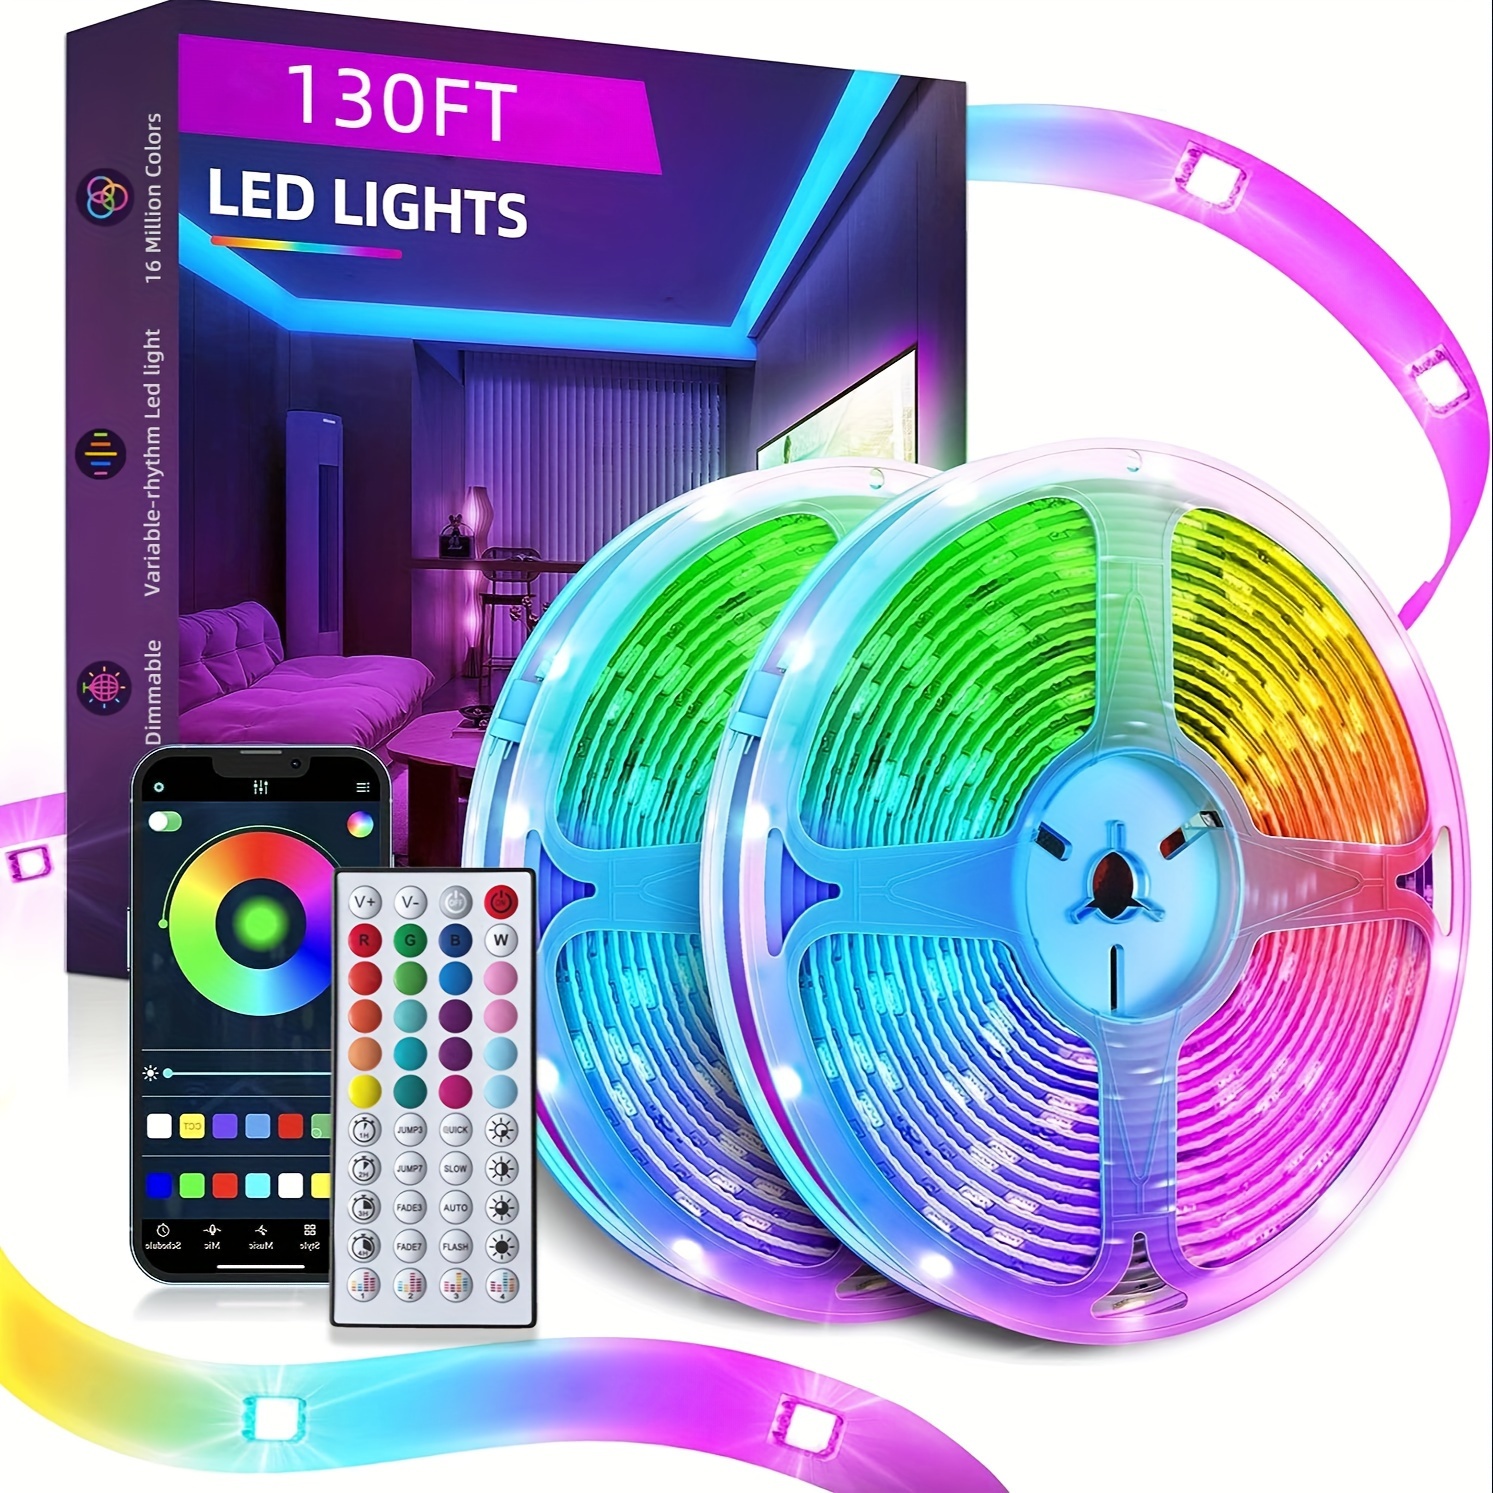 VOLIVO 50 FT RGB Led Strip Lights,Color Changing Led Light Strips Kit with  44 Keys IR Remote Control, Led Lights for Bedroom, Room, Home Decoration